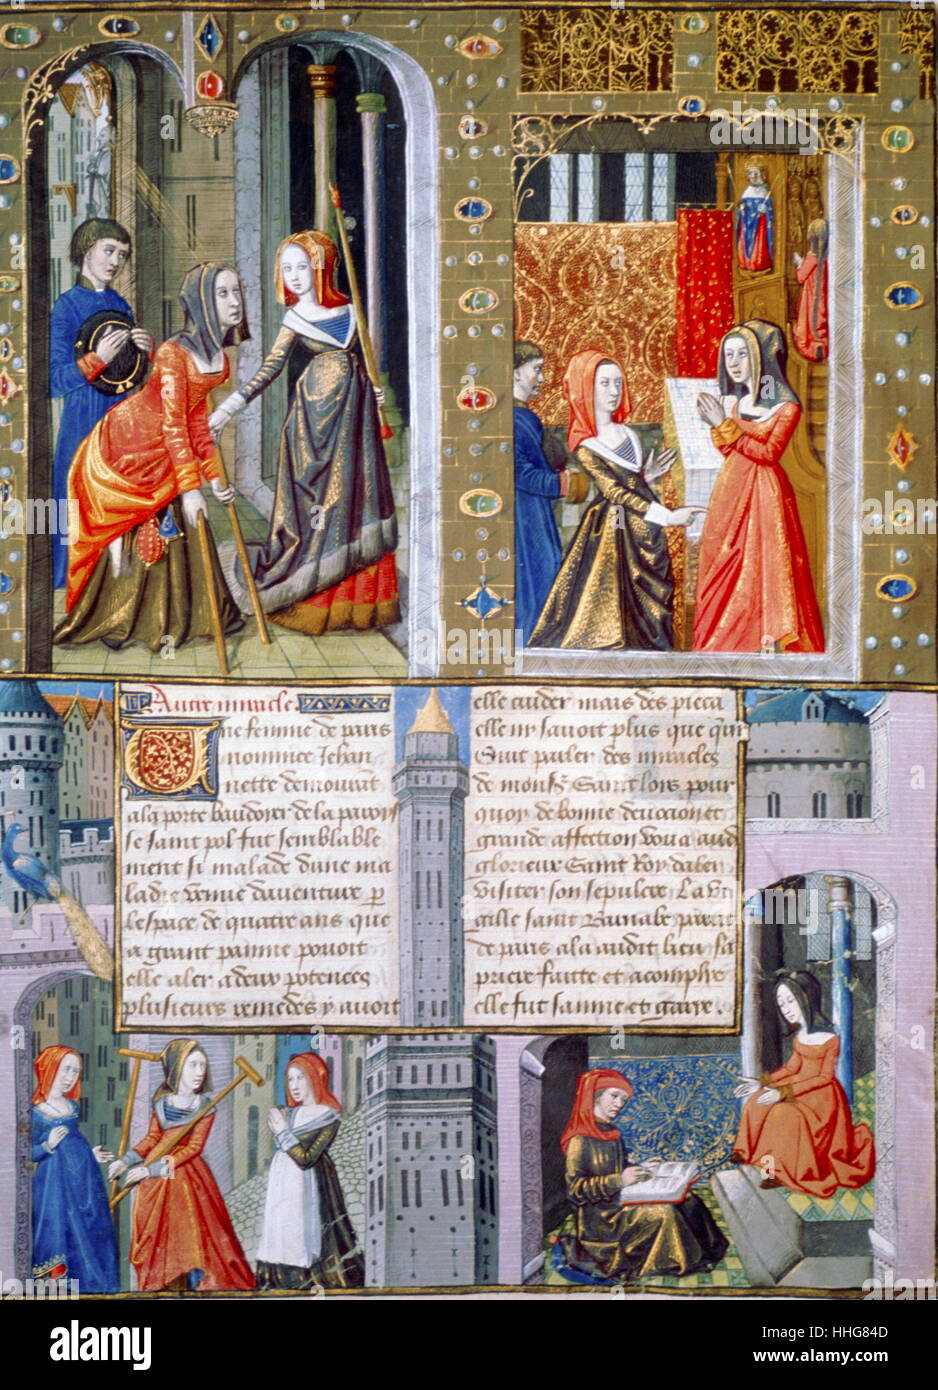 Le scene di vita quotidiana in Francia nel medioevo, XV secolo; Illustrazione da Le Livre des faiz Monseigneur Saint Louis, nella collezione della Bibliotheque Nationale di Parigi Foto Stock